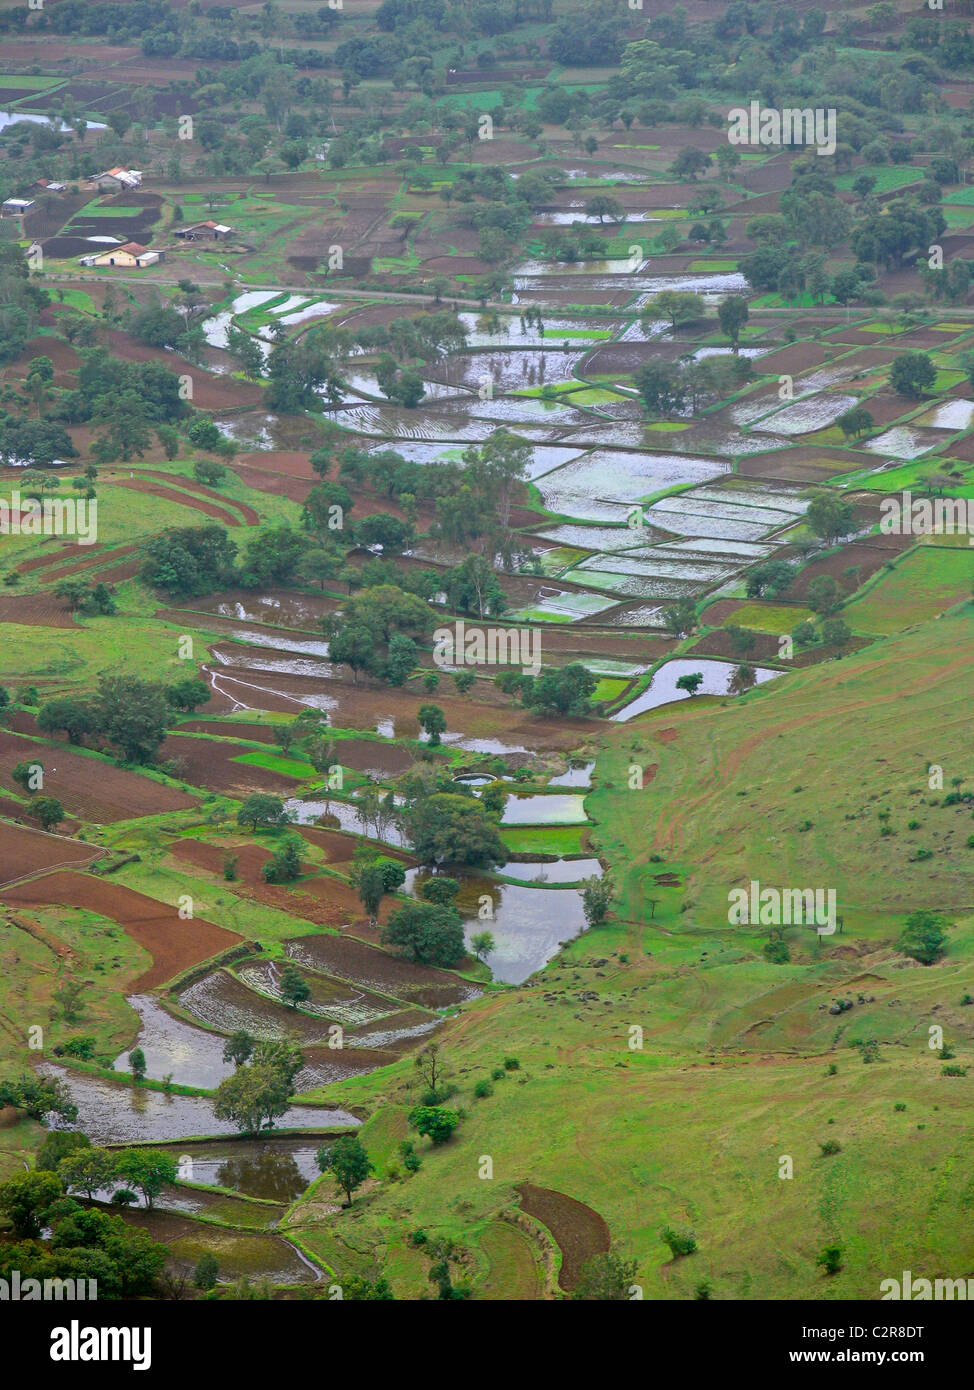 Vue de dessus du village et les terres agricoles d'sinhangad fort. Le Maharashtra, Inde Banque D'Images